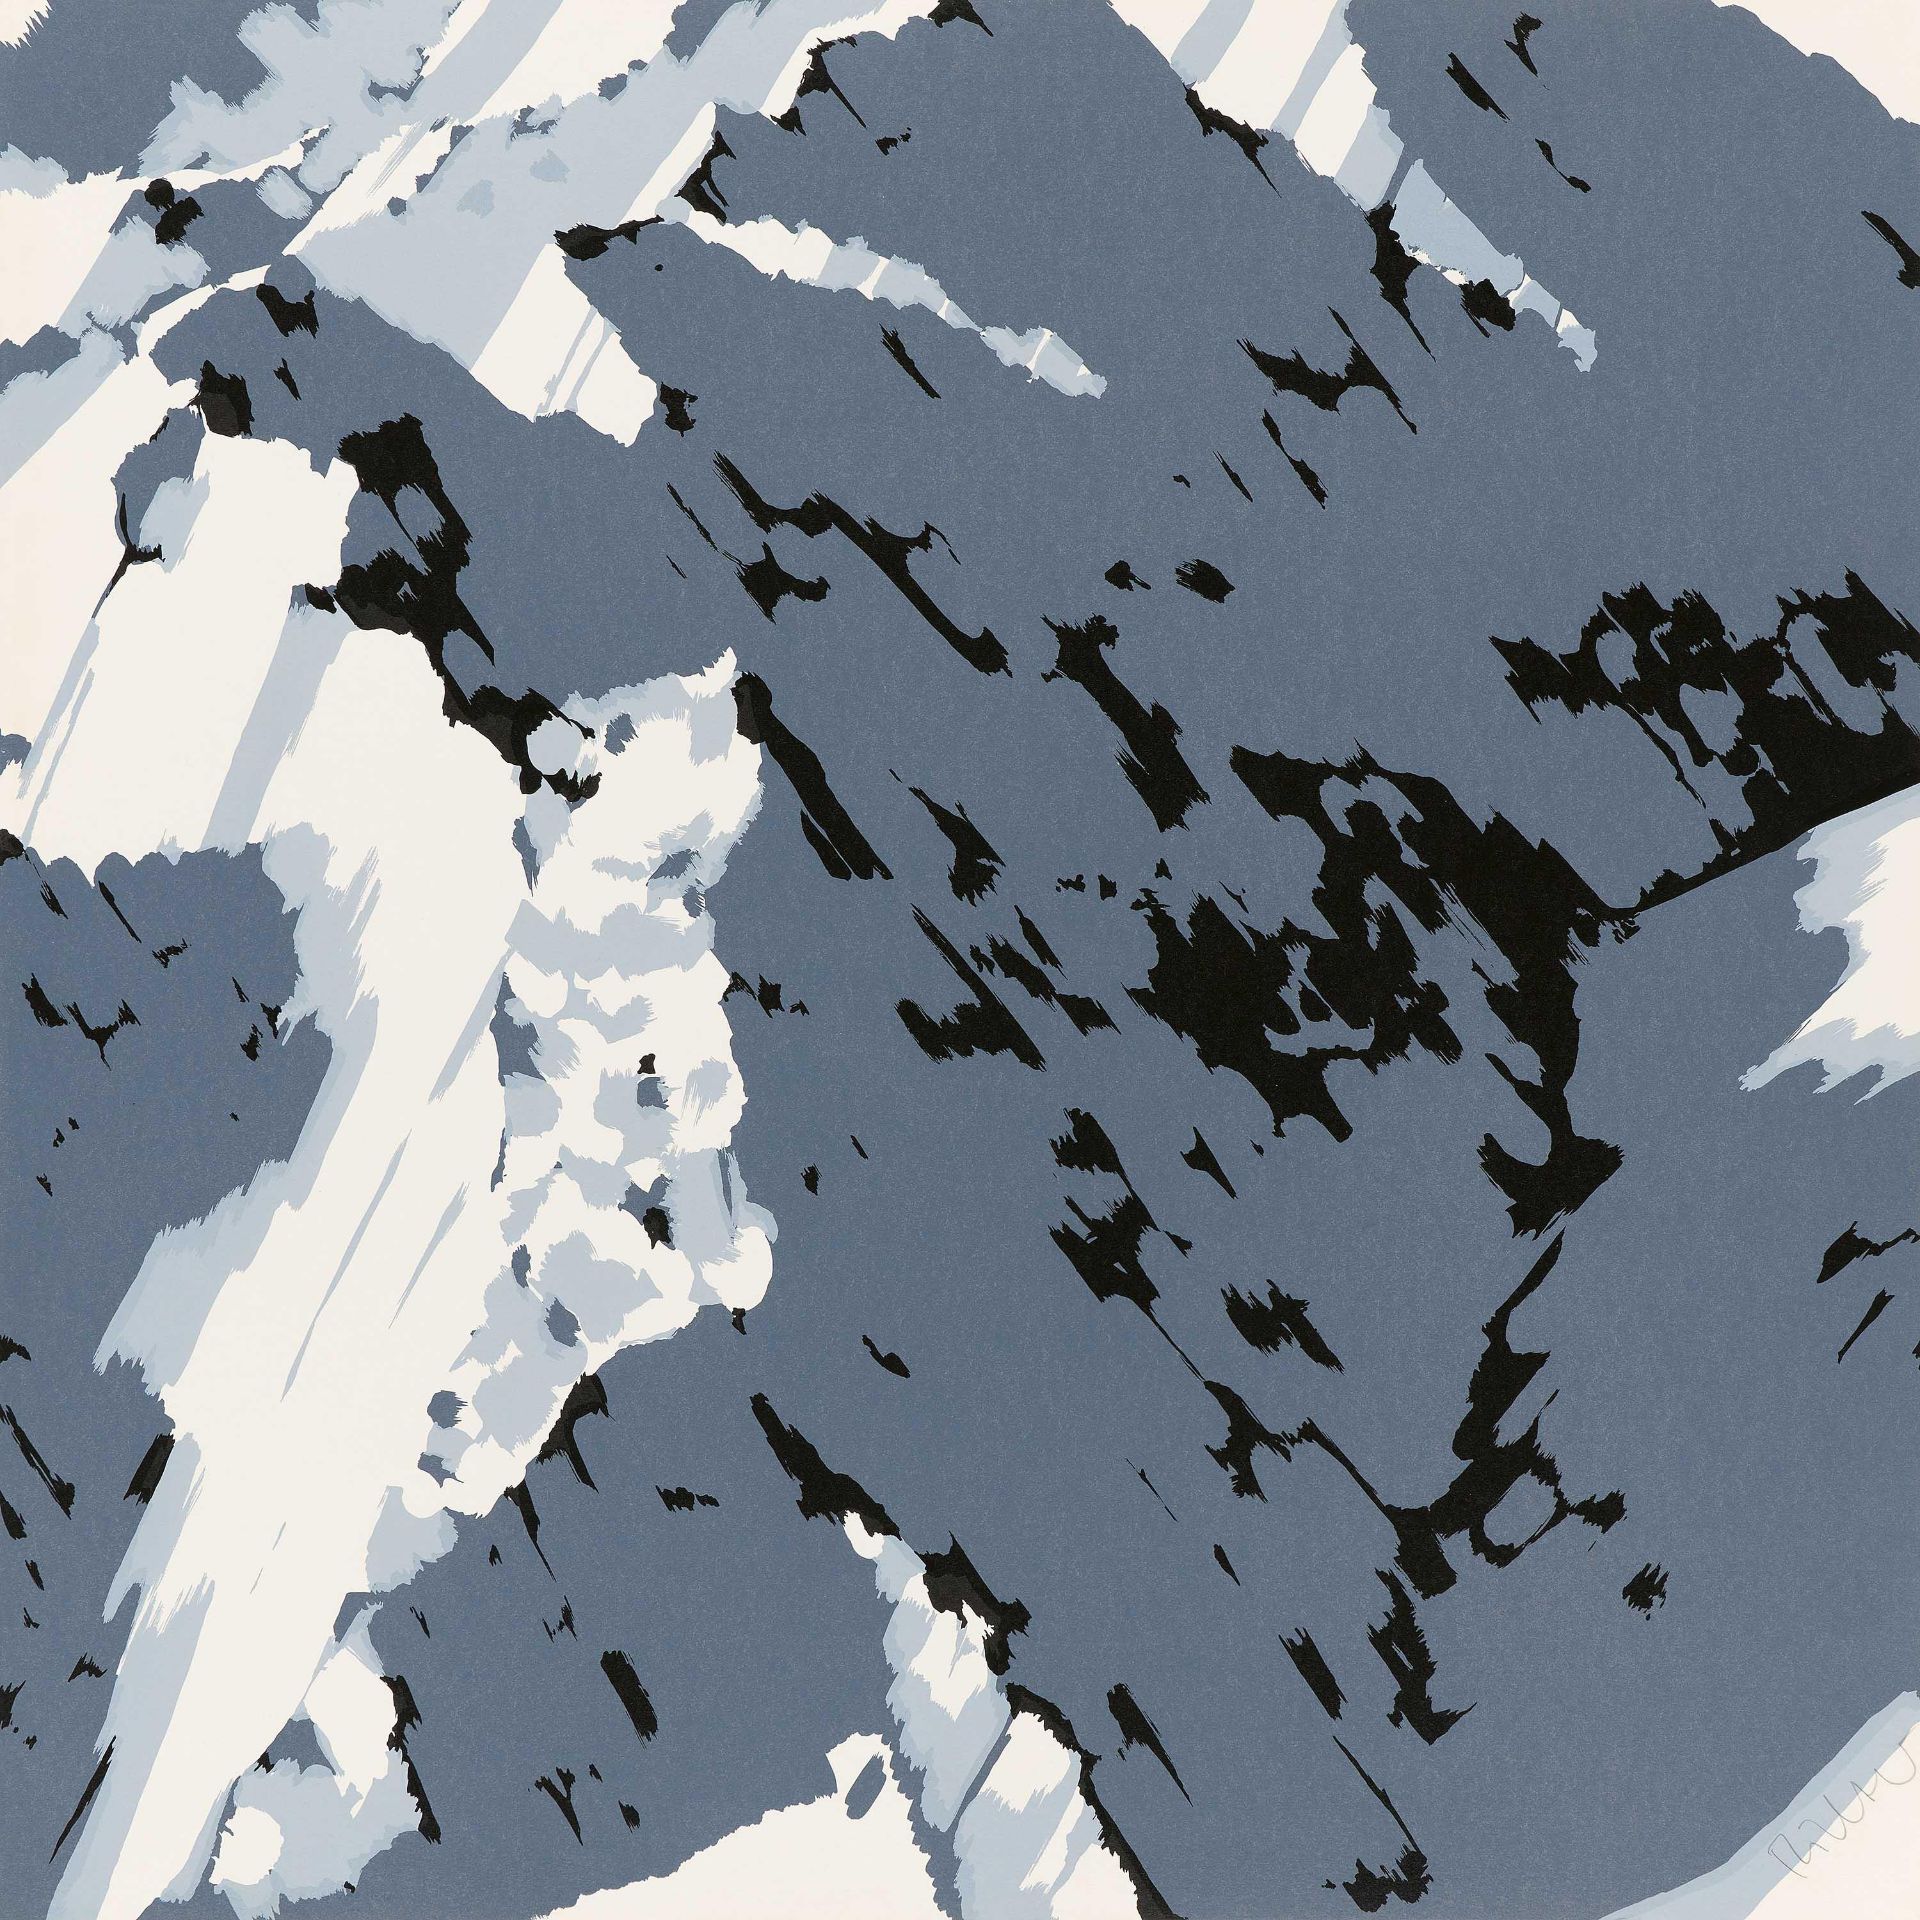 Gerhard Richter: Schweizer Alpen I (A1)